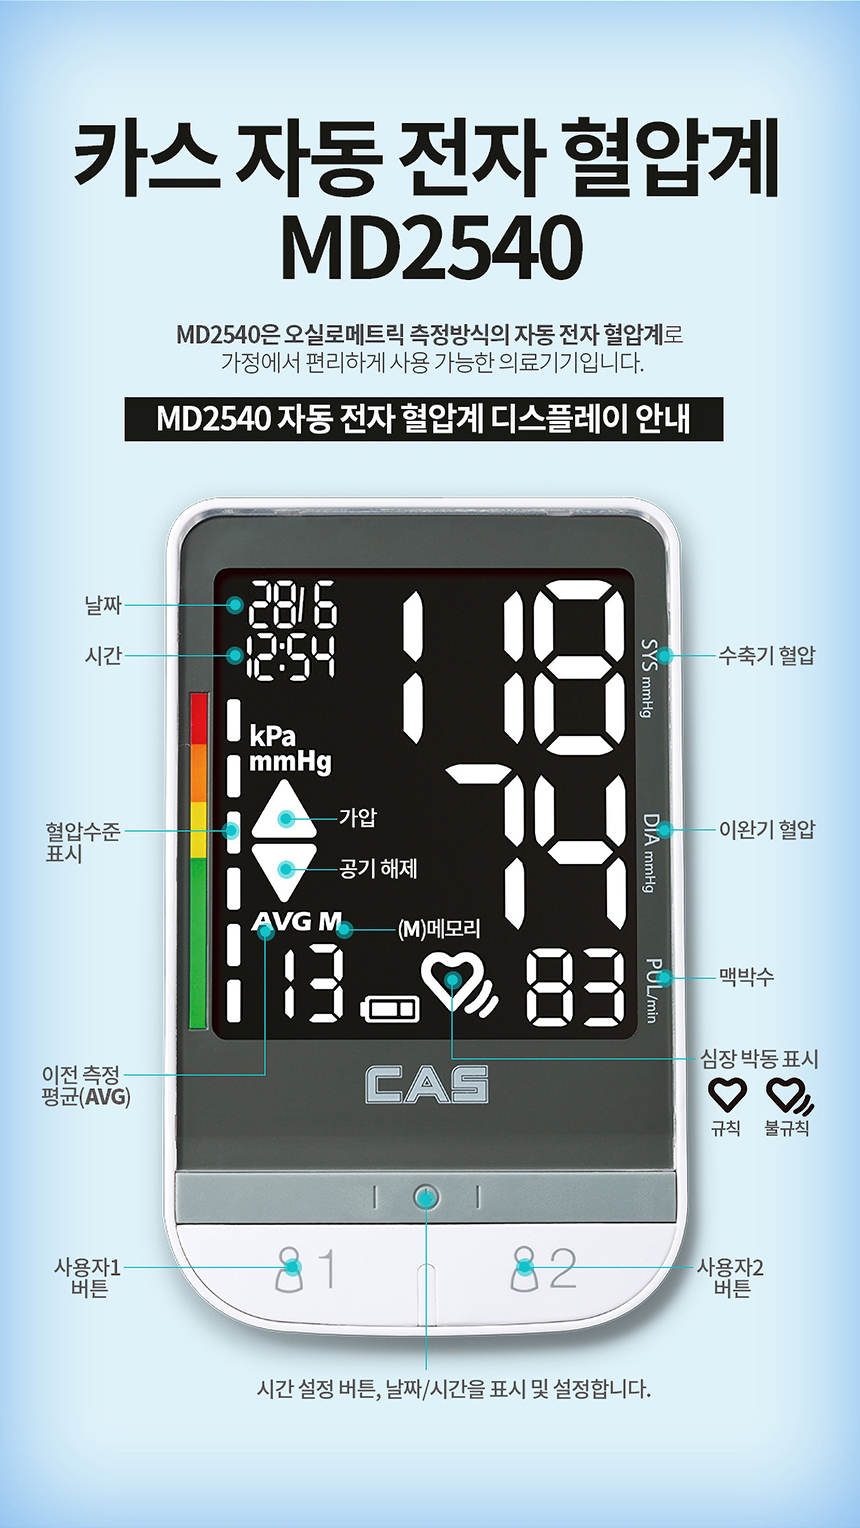 카스 자동전자 혈압계 MD2540